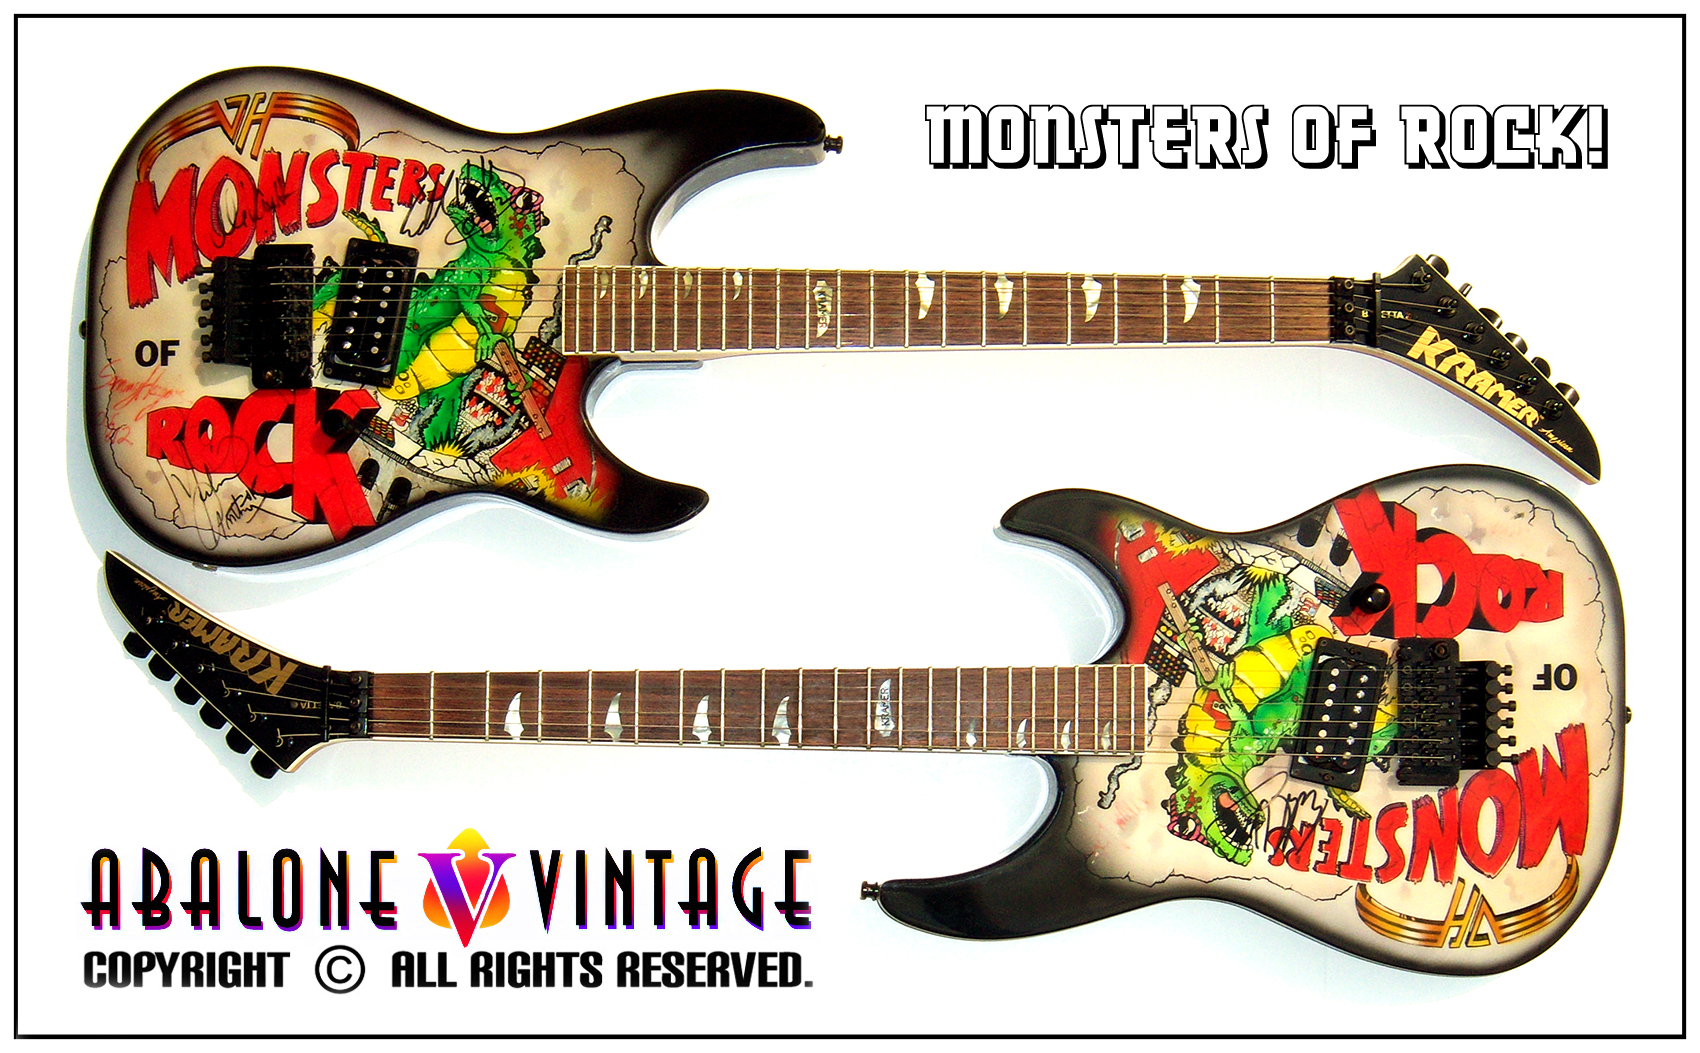 1988 Kramer Monsters of Rock graphic Van Halen Guitars!